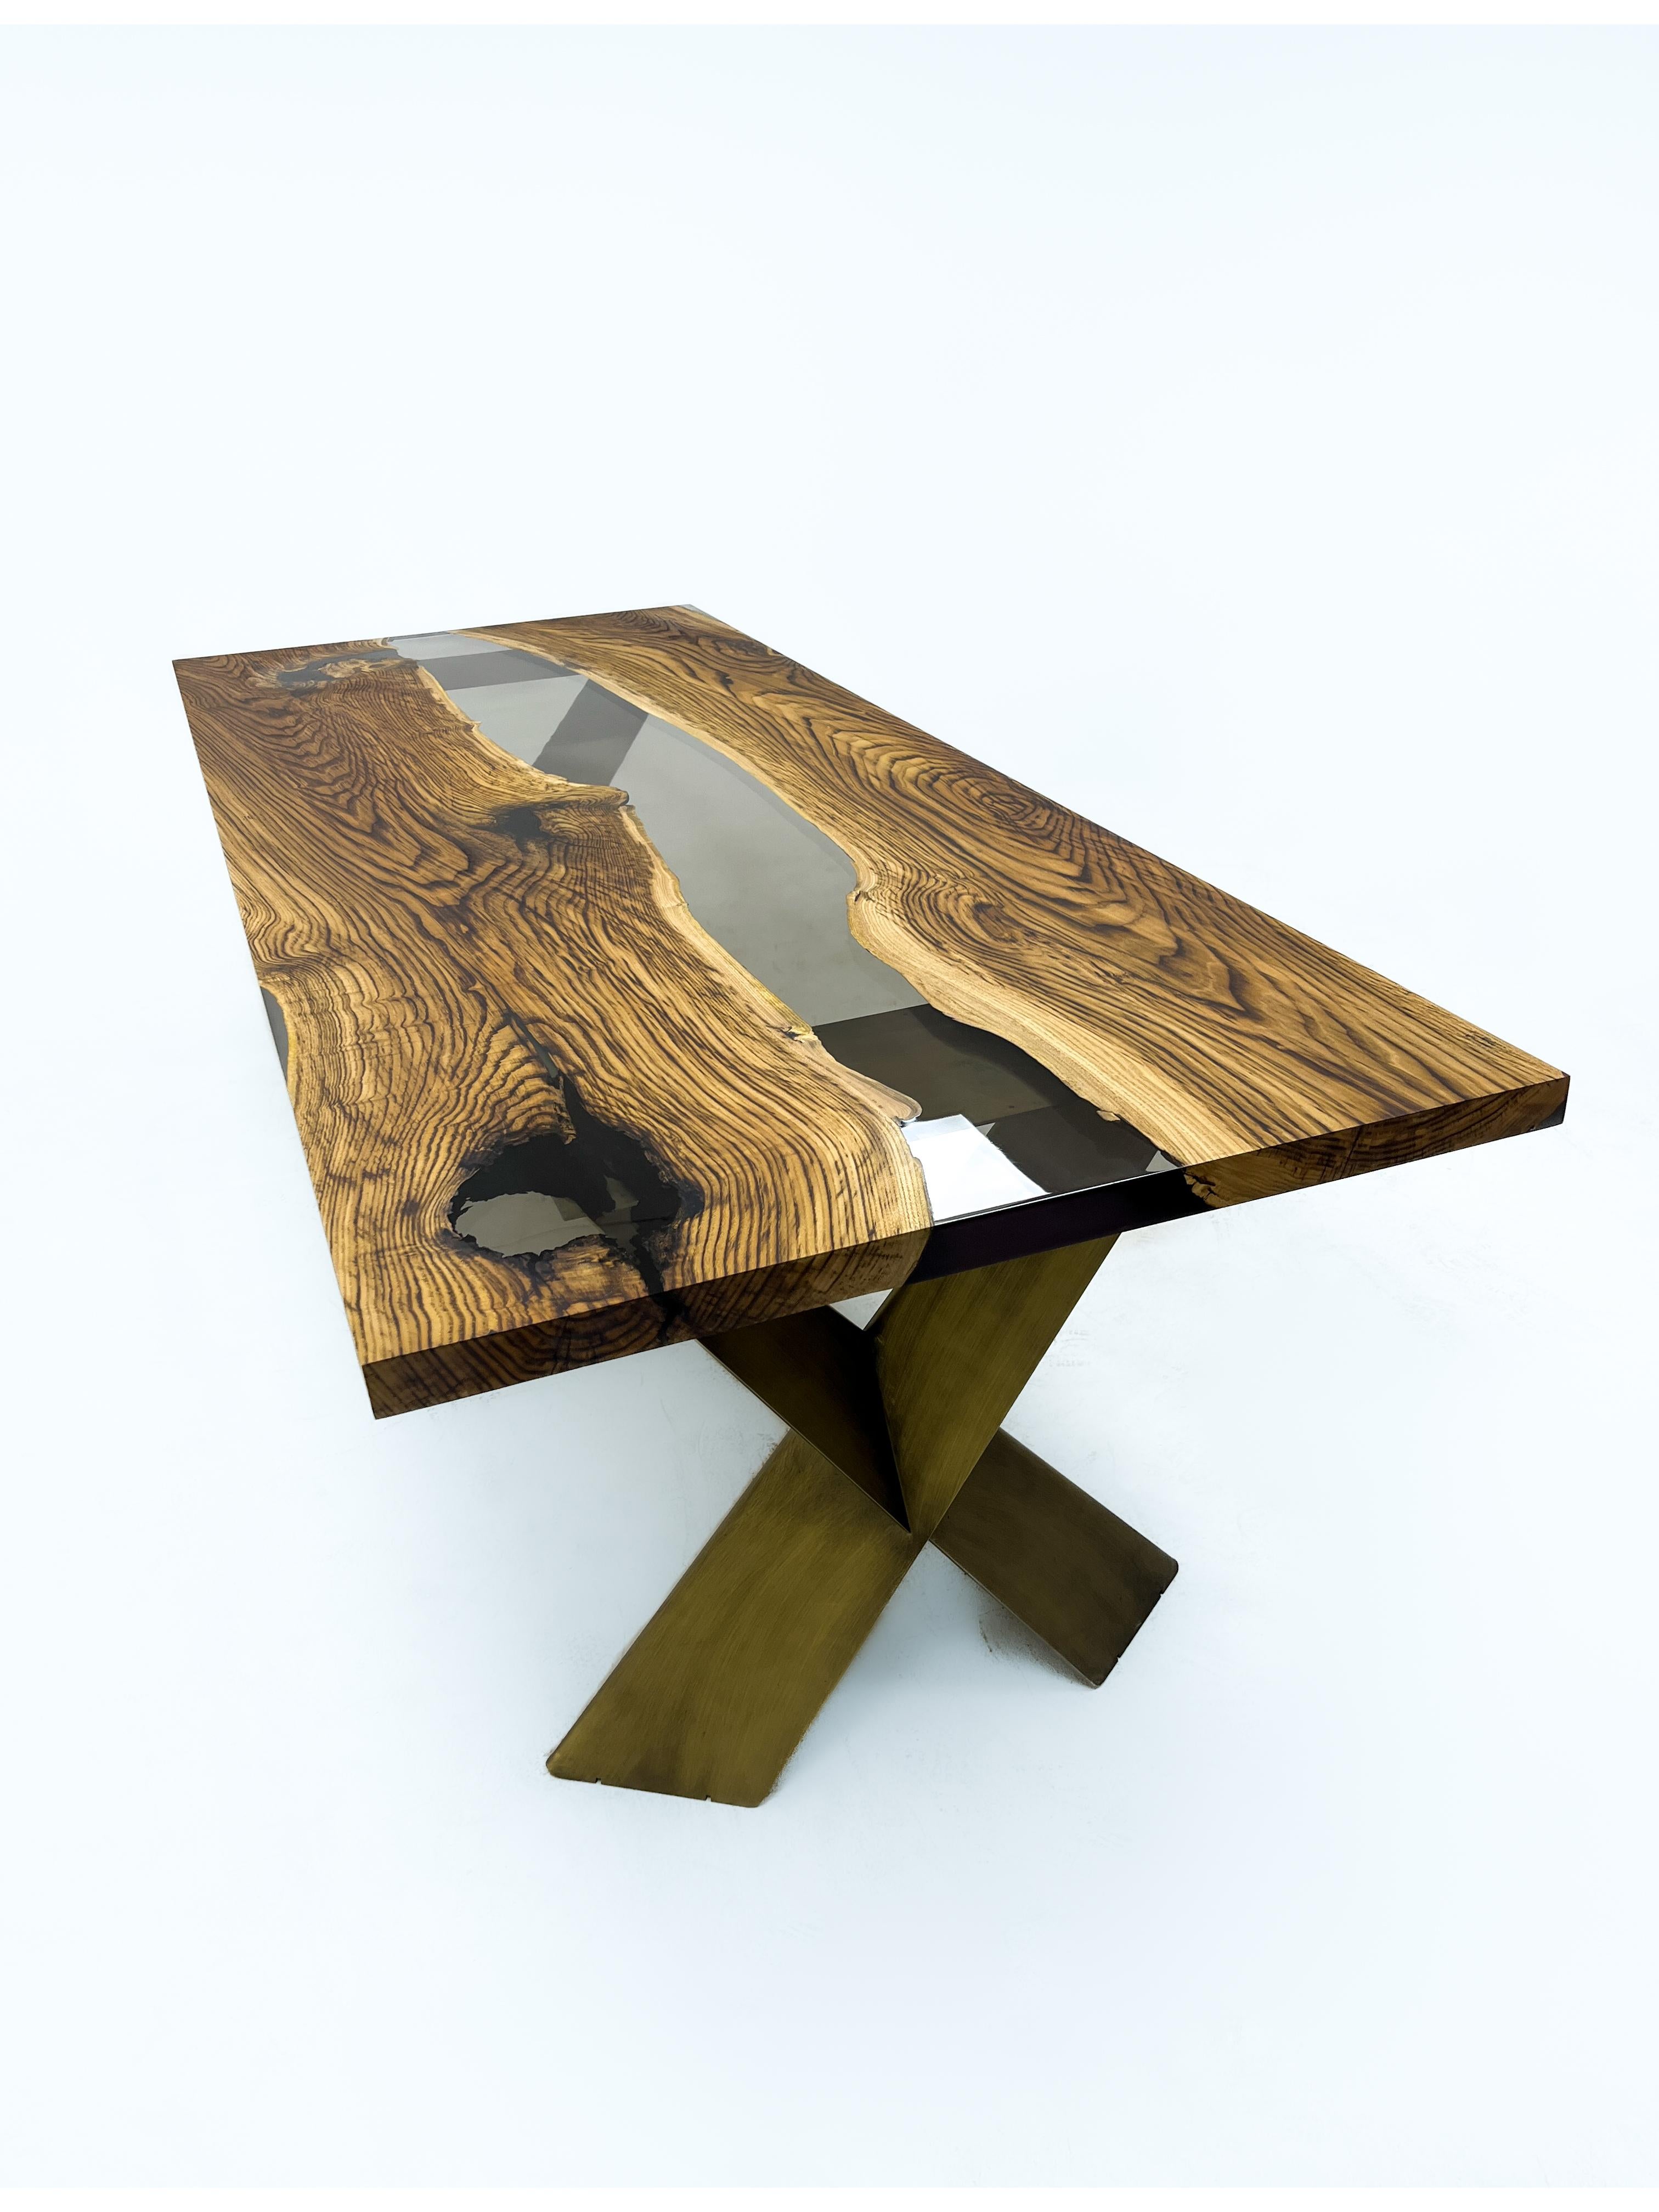 Table de salle à manger en résine époxy claire sur mesure en châtaignier 

Cette table est fabriquée en bois de châtaignier vieux de 500 ans. Les veines et la texture du bois décrivent l'aspect d'un bois de noyer naturel.
Elle peut être utilisée